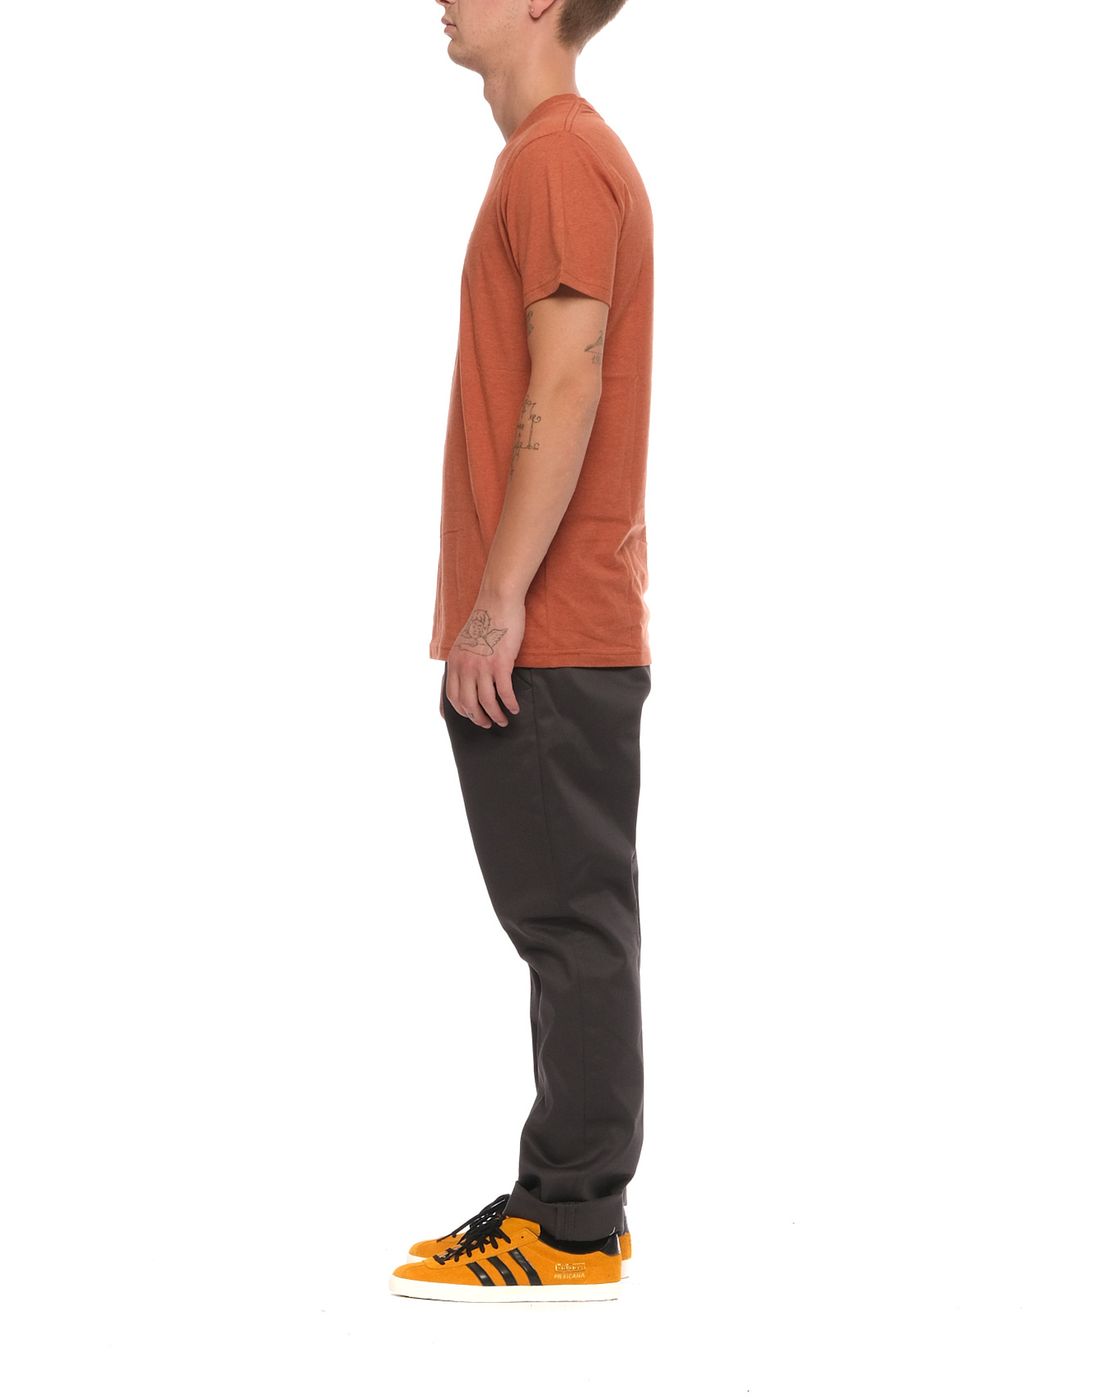 T-shirt pour l'homme 1294 orange-mel REVOLUTION